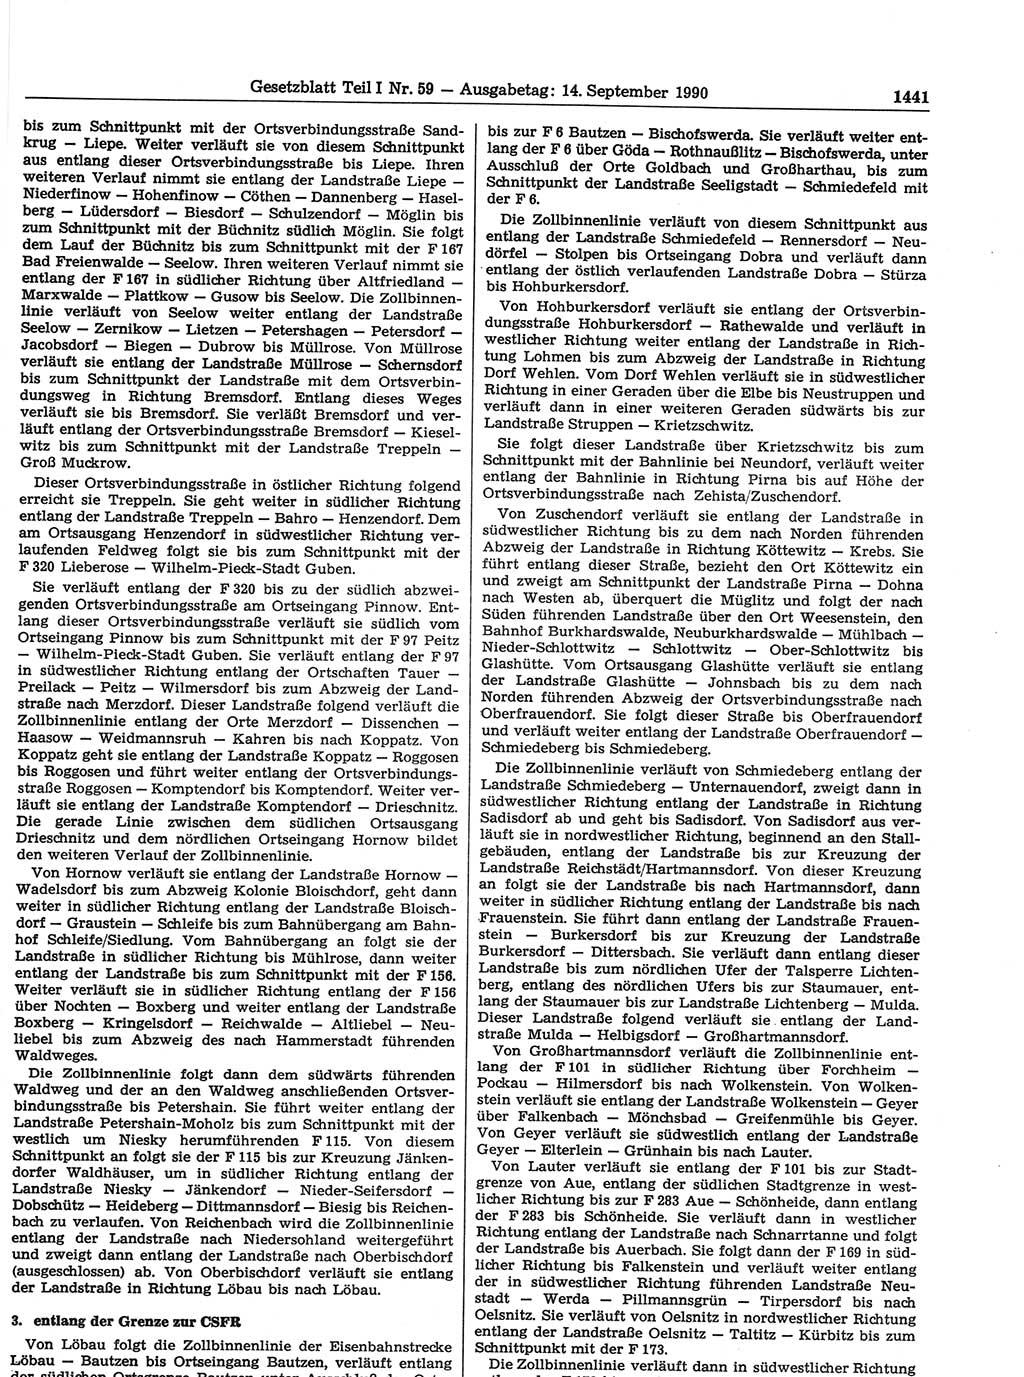 Gesetzblatt (GBl.) der Deutschen Demokratischen Republik (DDR) Teil Ⅰ 1990, Seite 1441 (GBl. DDR Ⅰ 1990, S. 1441)